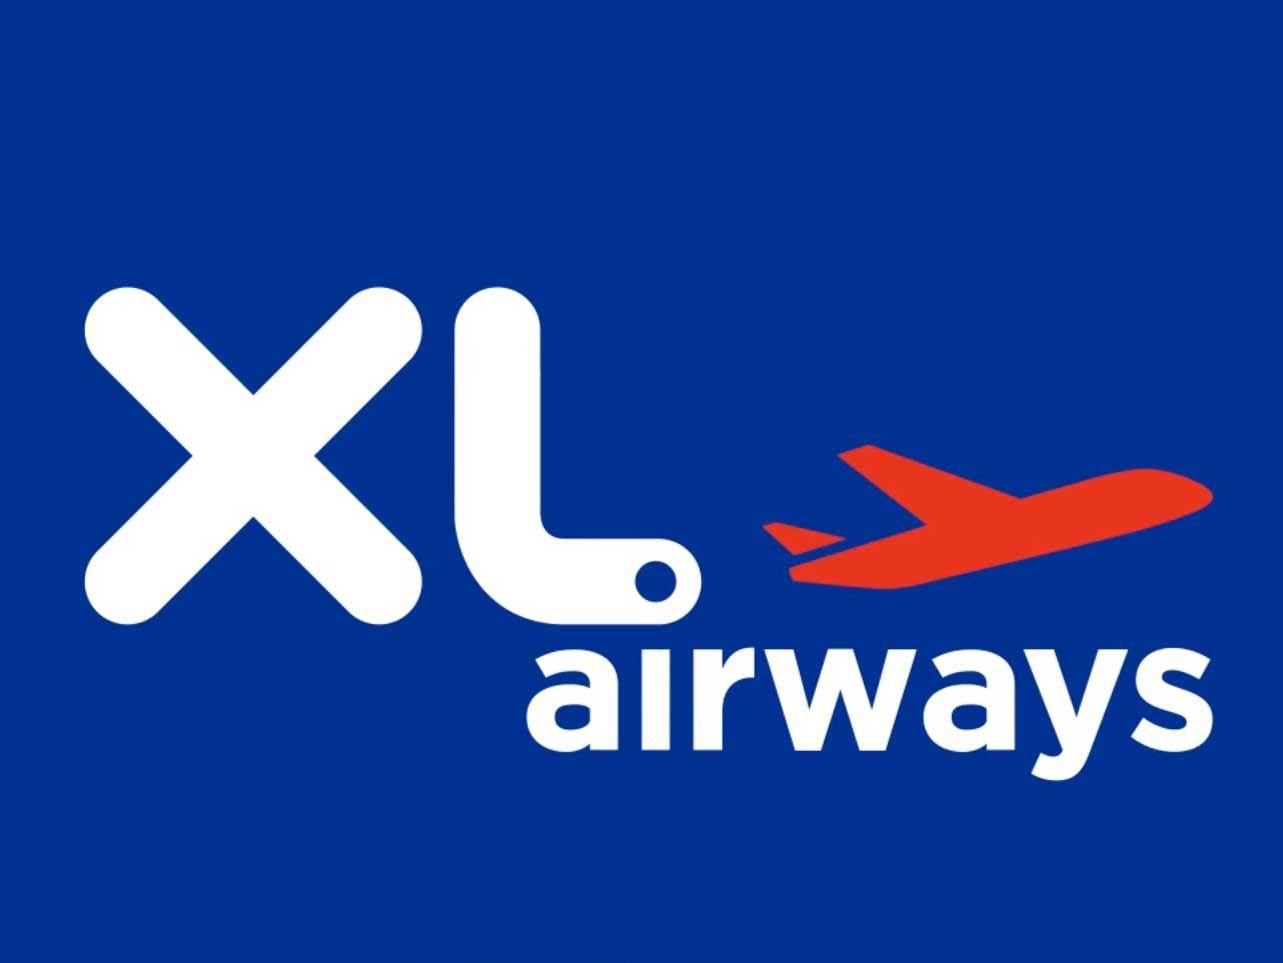 Leading Airline Logo - XL Airways : nouveau logo, nouvelle campagne de marketing | Logos ...